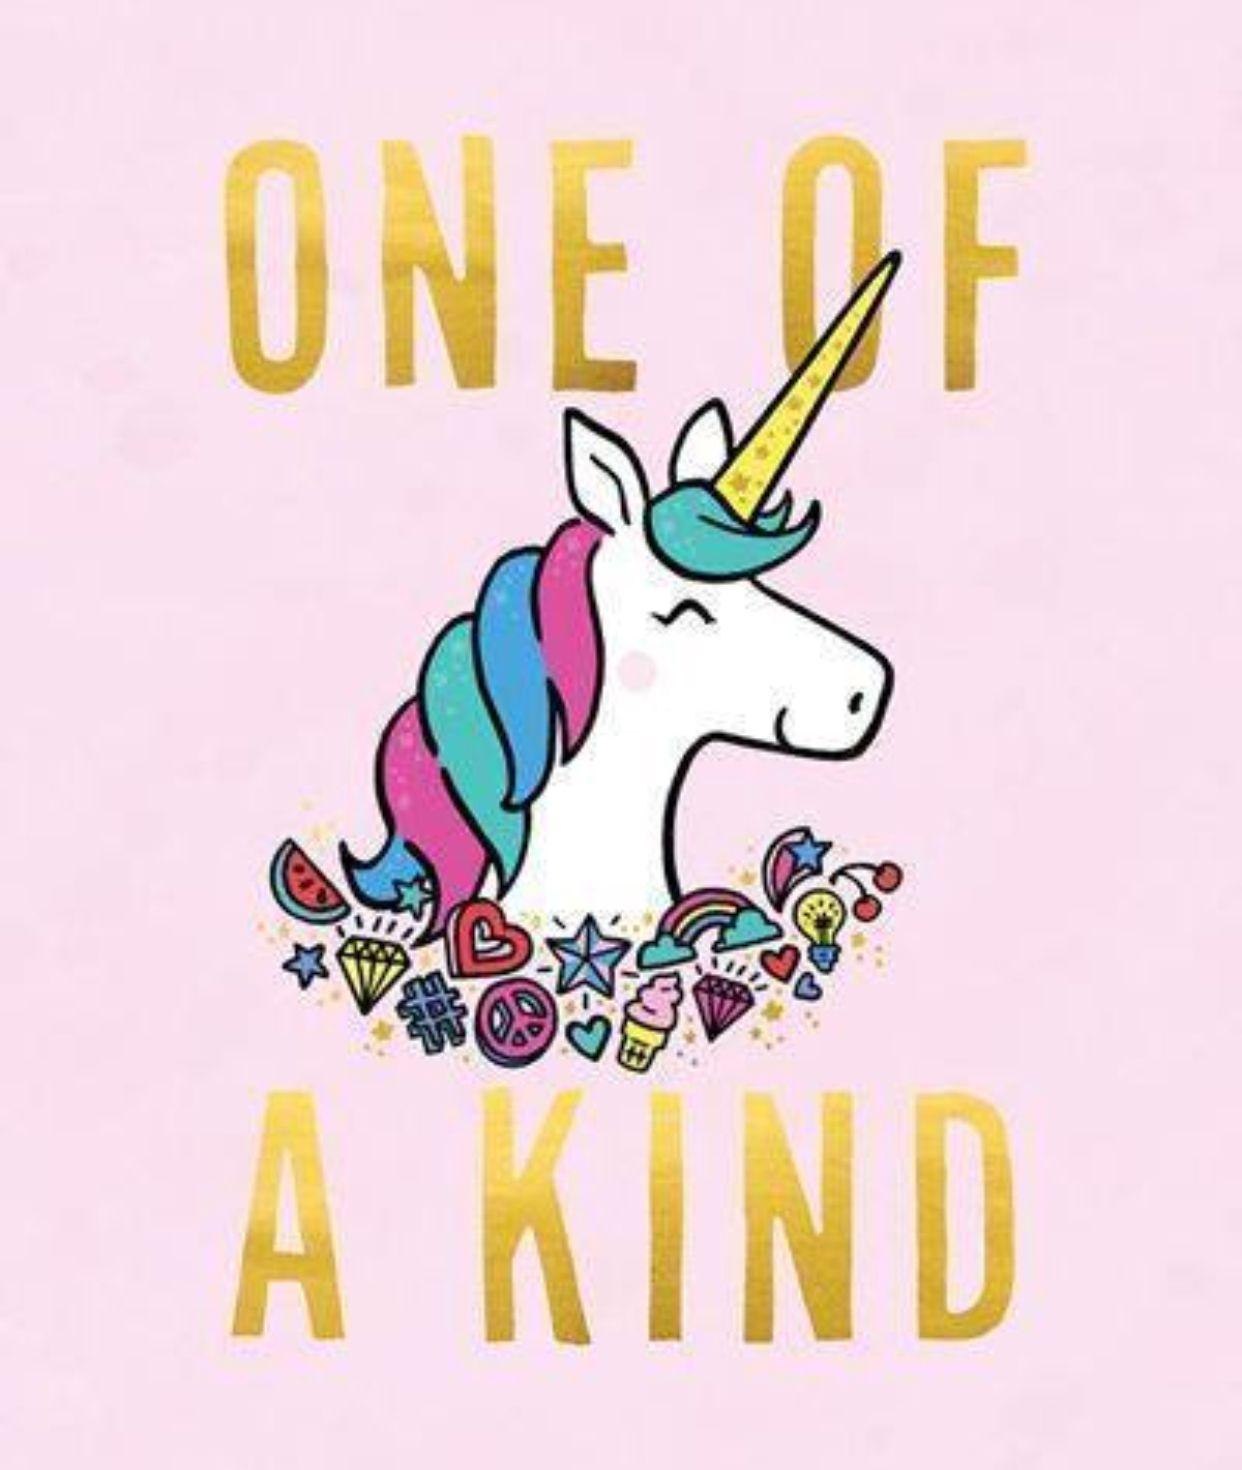 Cute Unicorn Logo - Unicorn | Fantasy Horses | Pinterest | Unicorn, Unicorn quotes and ...